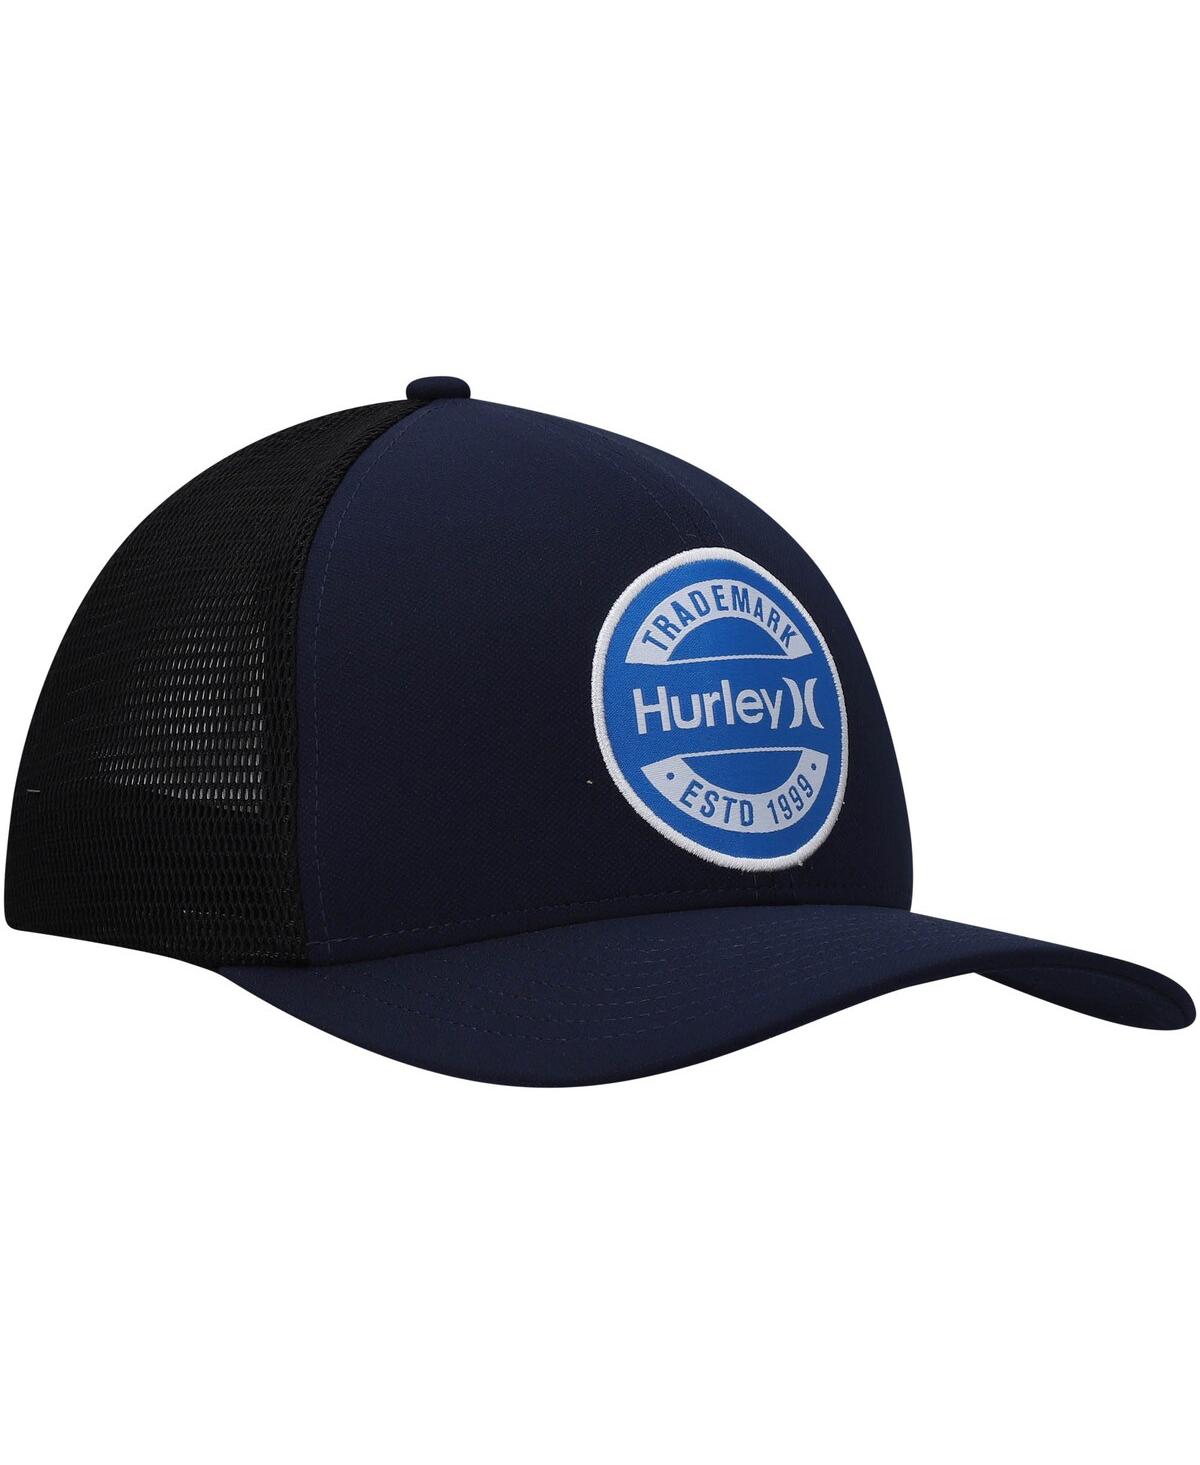 Shop Hurley Men's  Navy Charter Trucker Snapback Hat